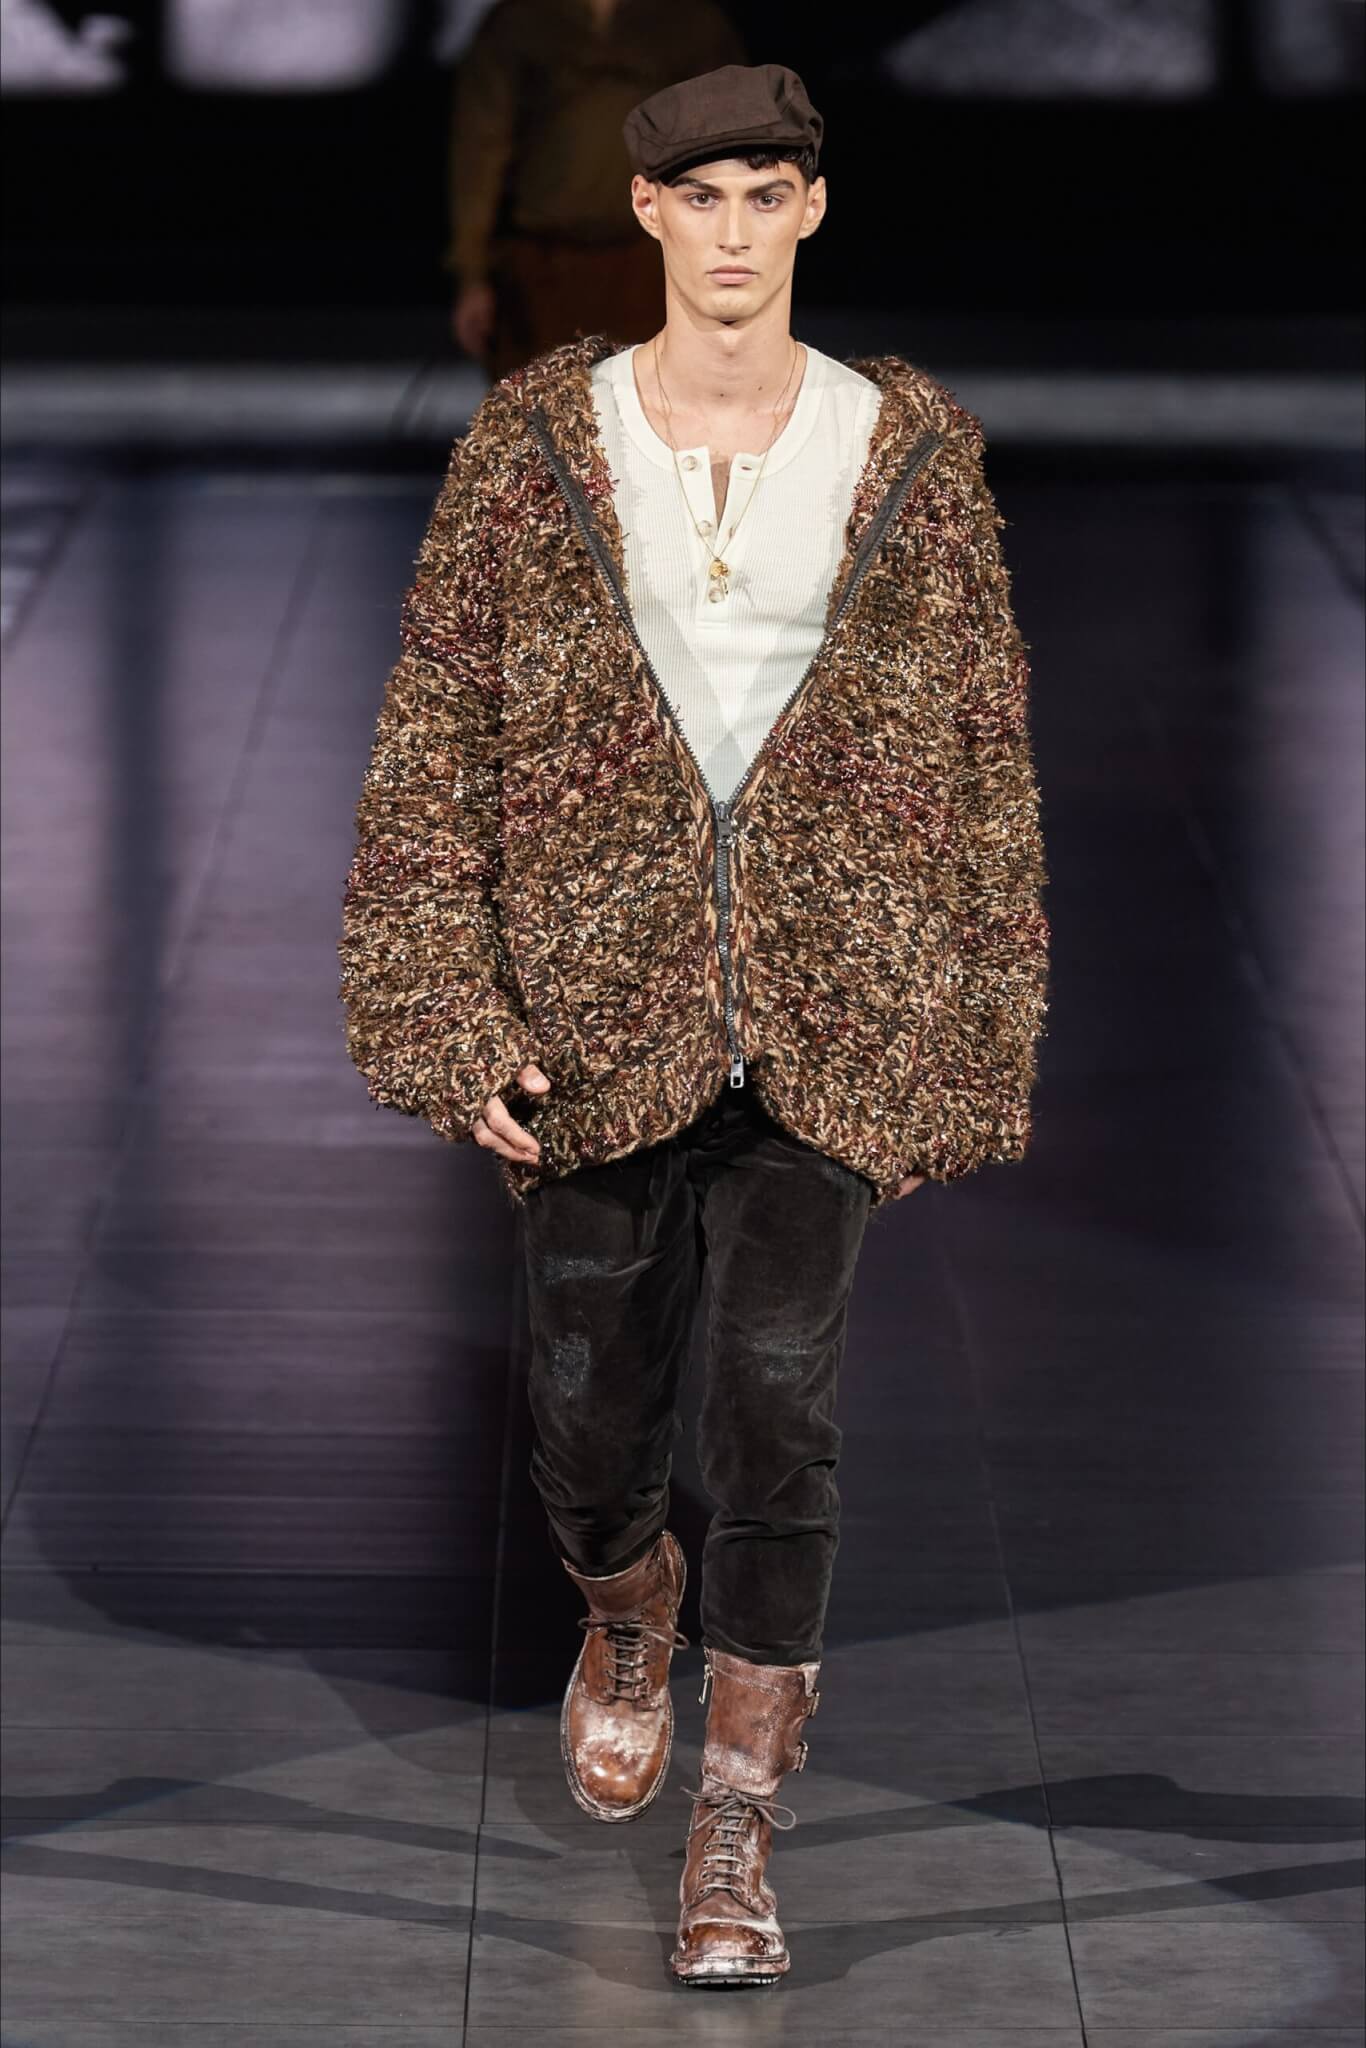 Il Cardigan è il Must Have Moda Uomo dell'Inverno 2020 - Dolce Gabbana scaled - Gay.it